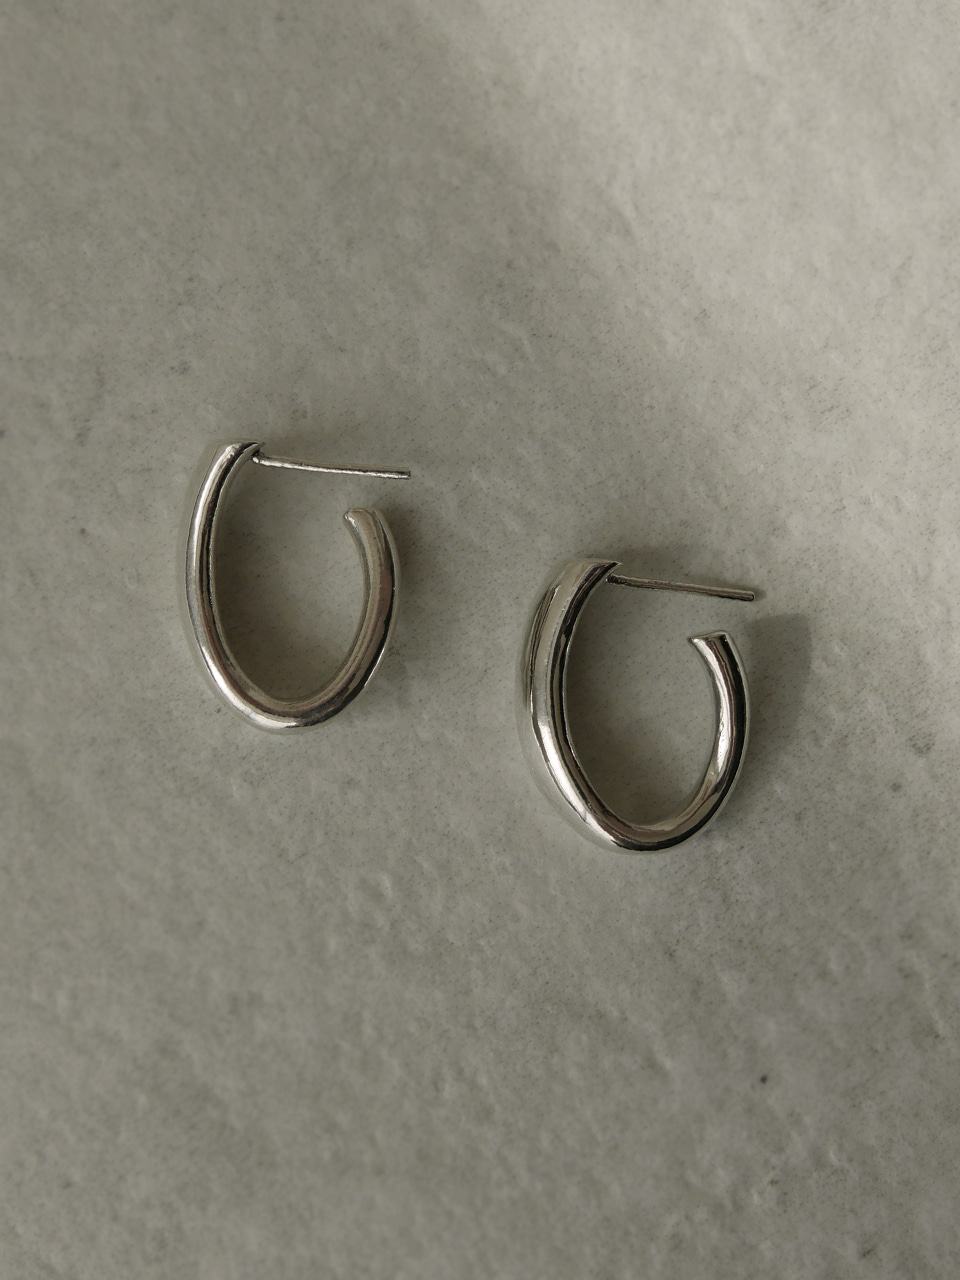 Oval silver earrings